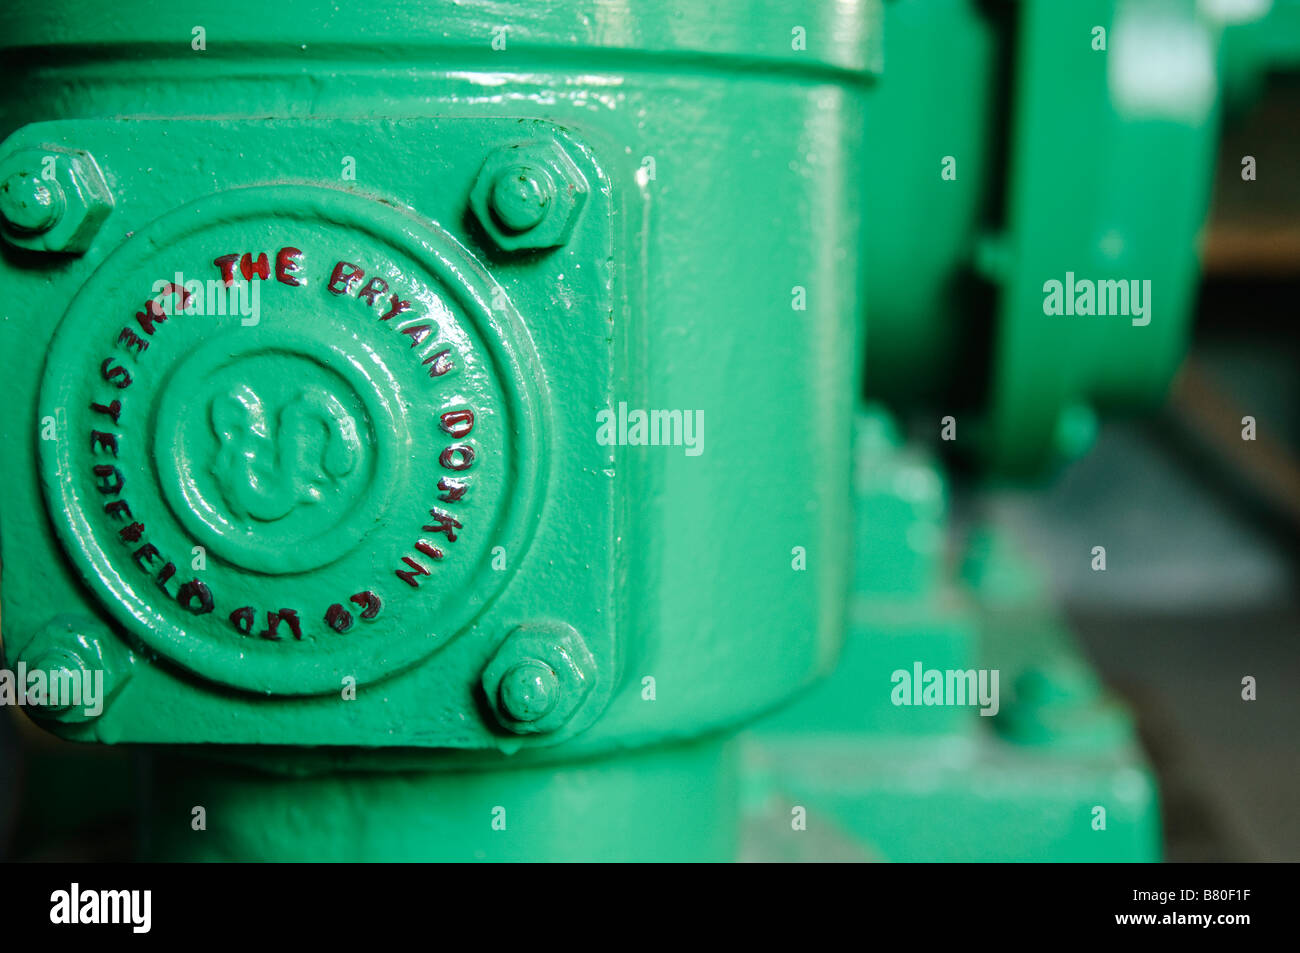 Gedenktafel an der Seite von Gusseisen Gas Pumpengehäuse sagen 'Die Bryan Donkin Co Ltd, Chesterfield' Stockfoto